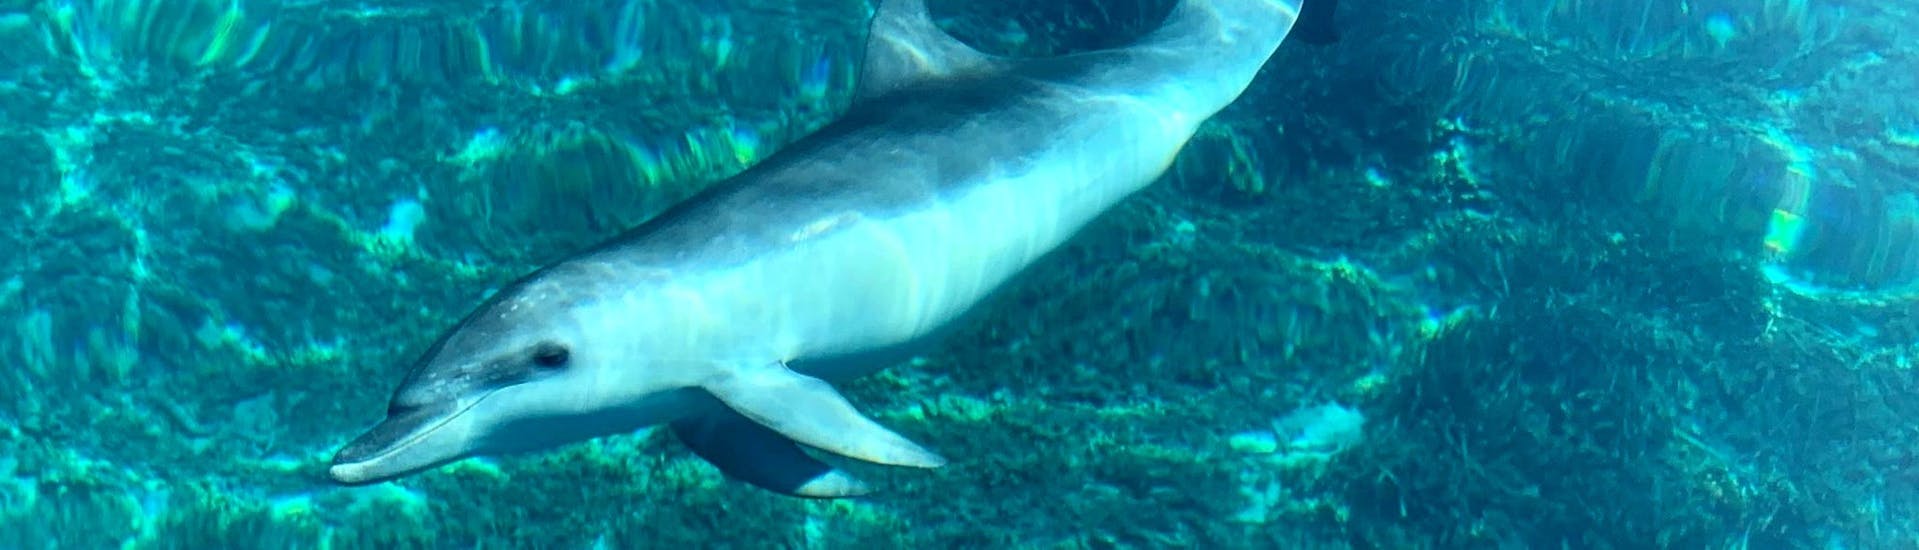 Foto van een dolfijn, gemaakt tijdens de boottocht naar Cala Moresca met snorkelen en dolfijnen spotten met BlueSea Charter & Tour Olbia.